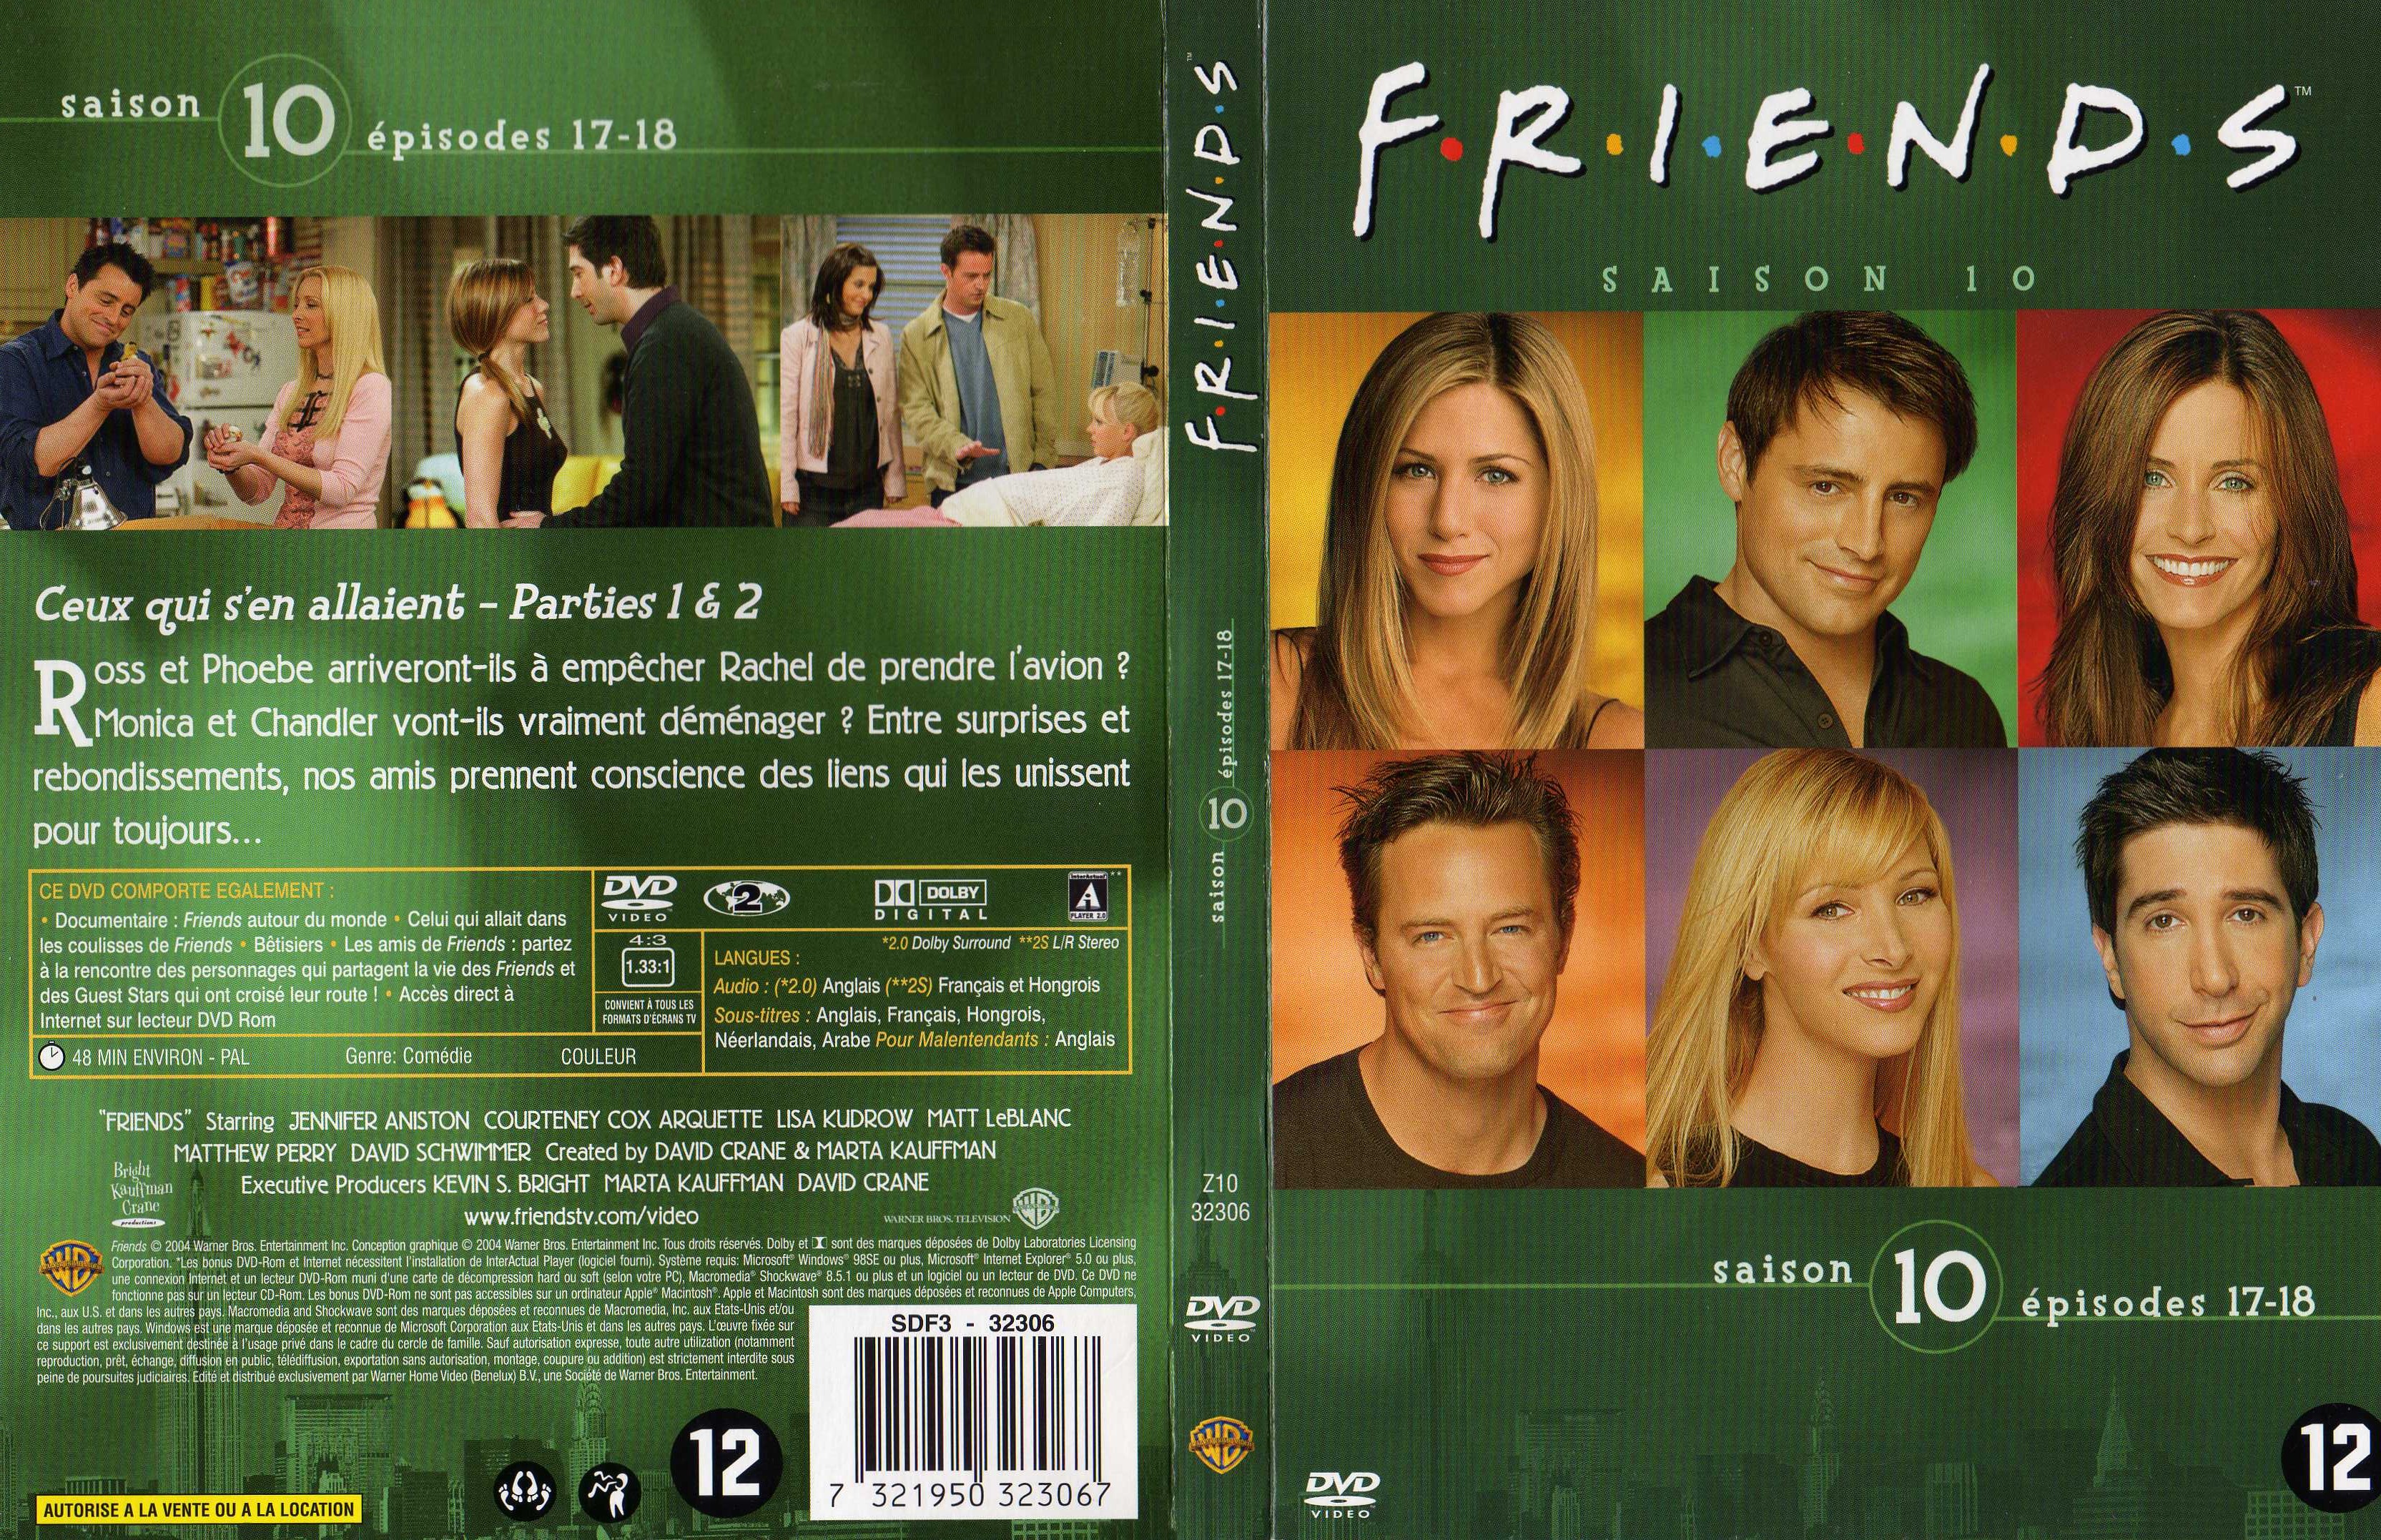 Jaquette DVD Friends saison 10 dvd 3 v2